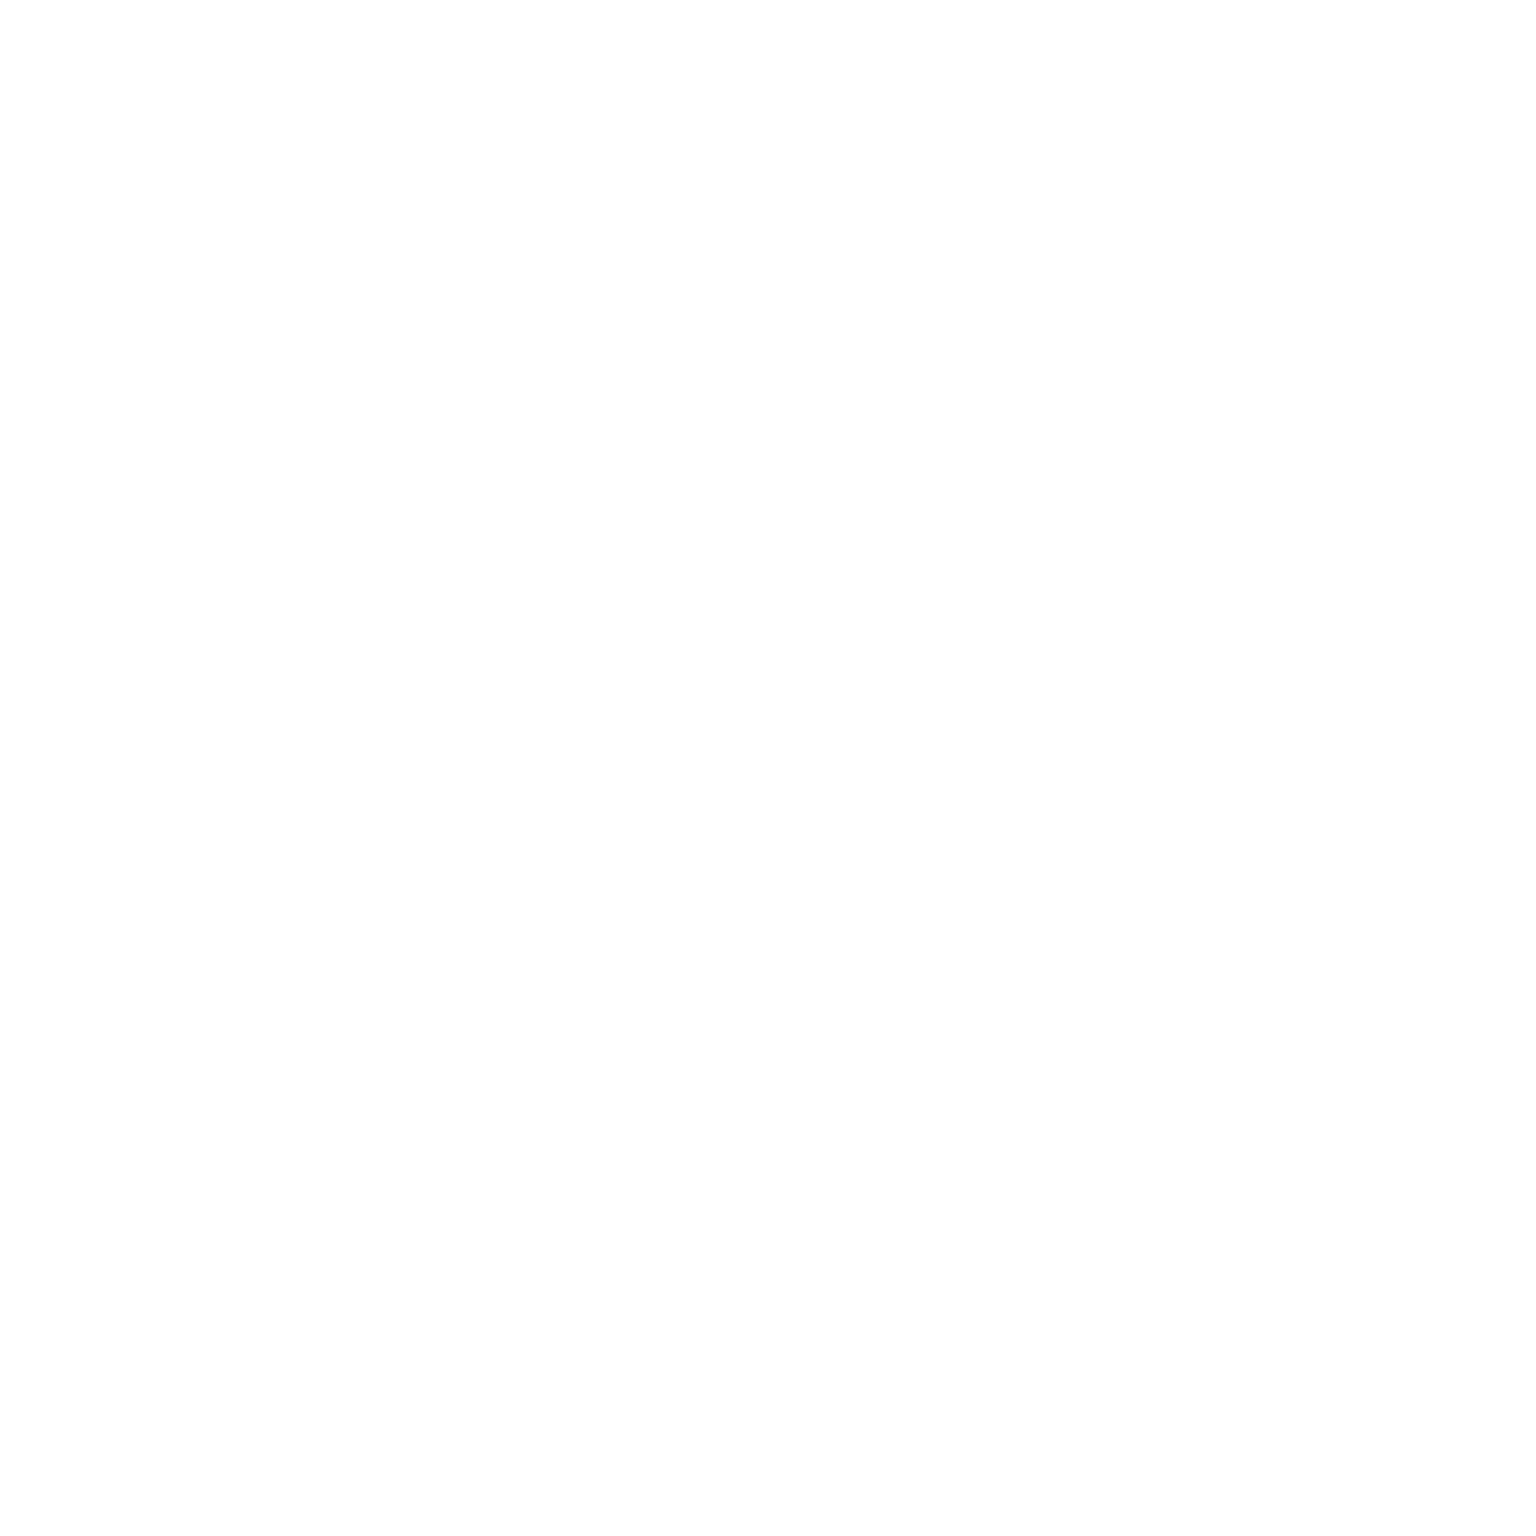 Bank of Beijing logo for dark backgrounds (transparent PNG)